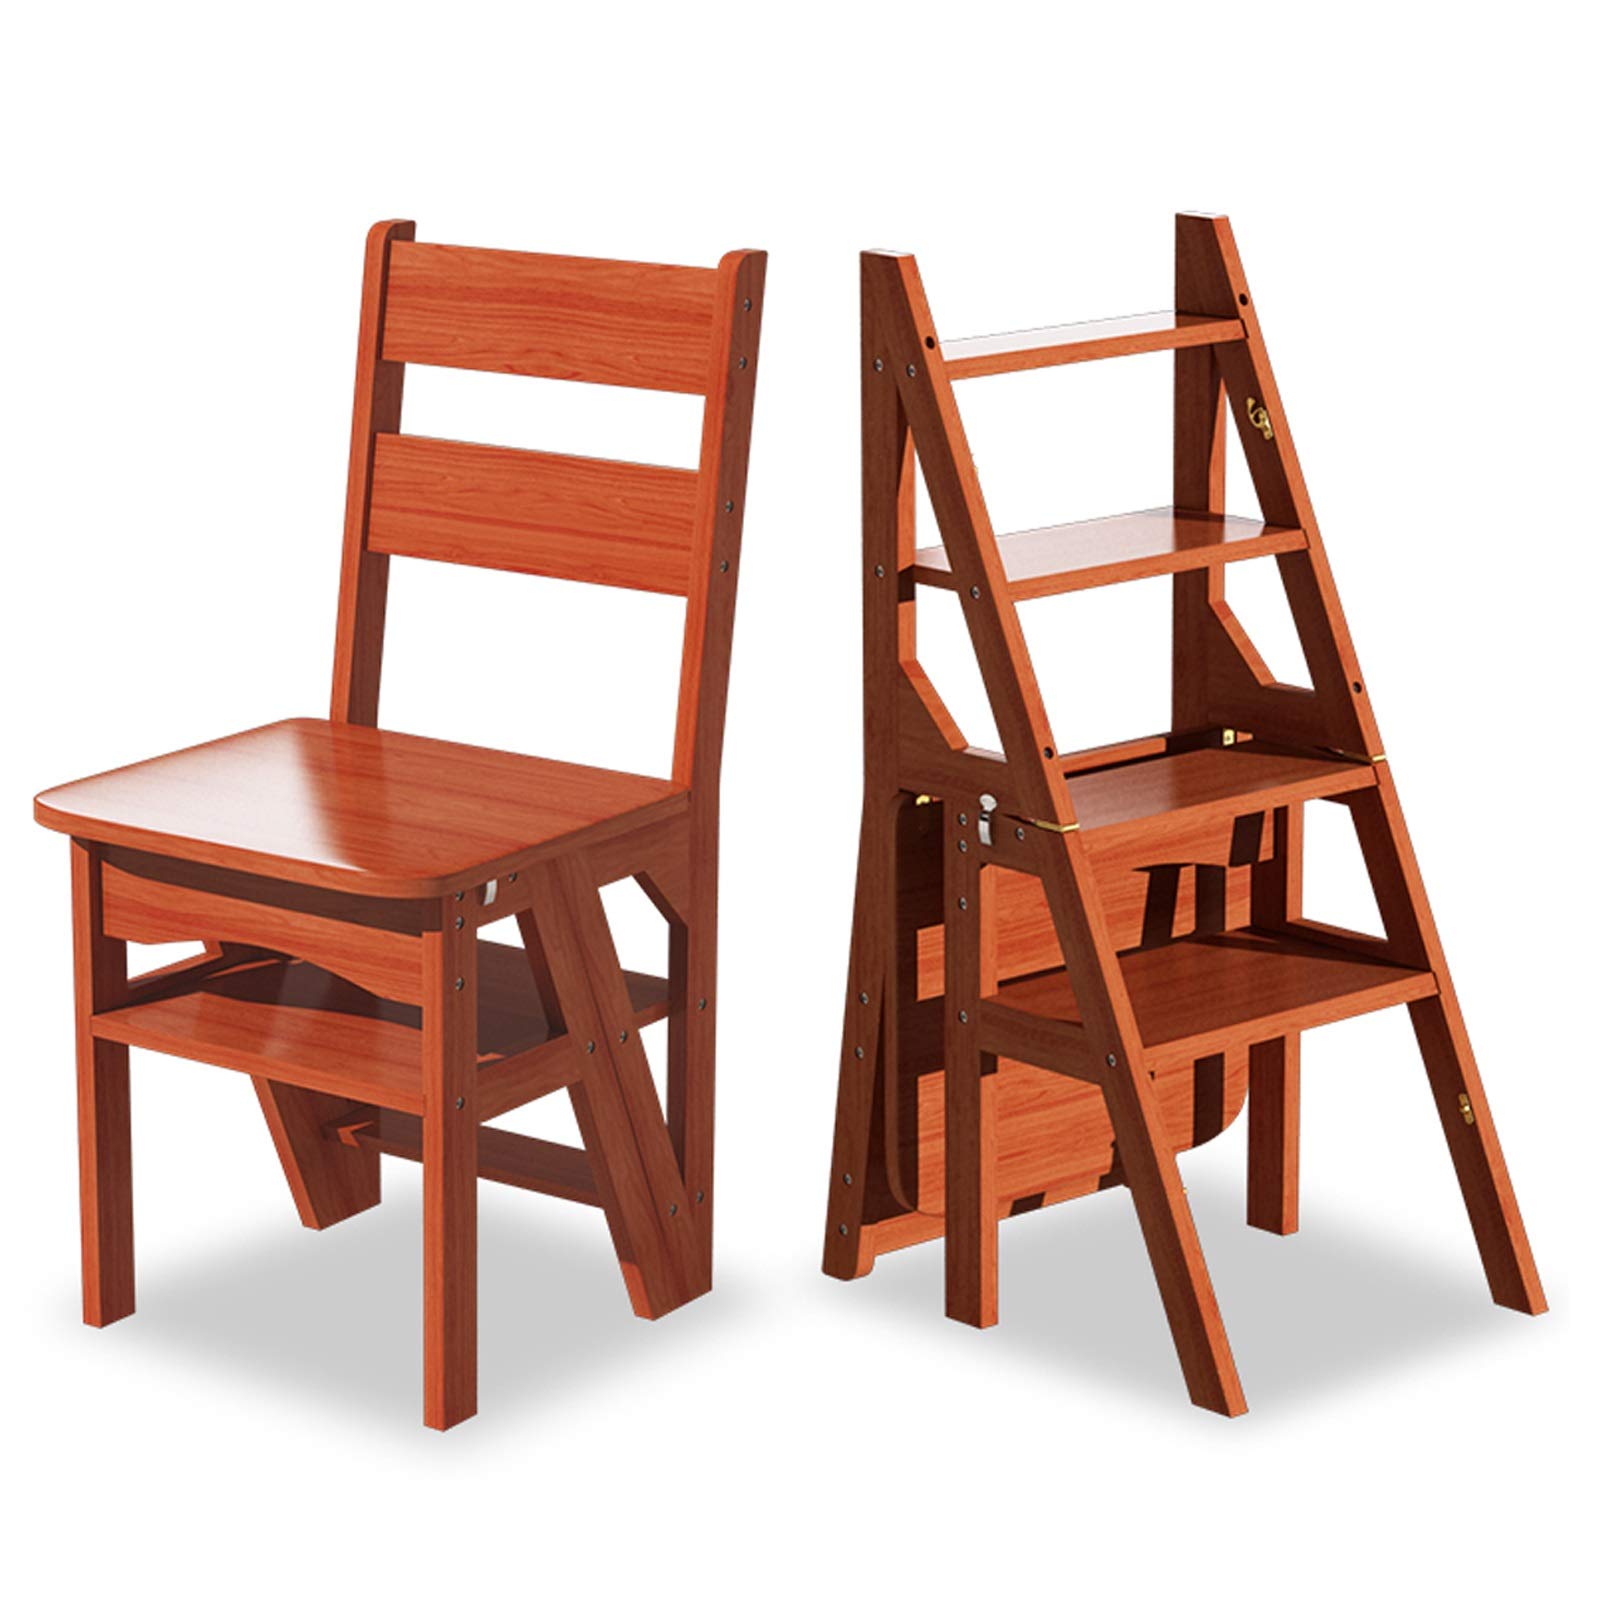 Massivholz-Klappleiter Lehrstuhl for Küche, Haushalt Faltbare Trittschemel Leiter Stuhl Tragbare Trittleiter und Stühle Kombination (Color : Walnut Color)